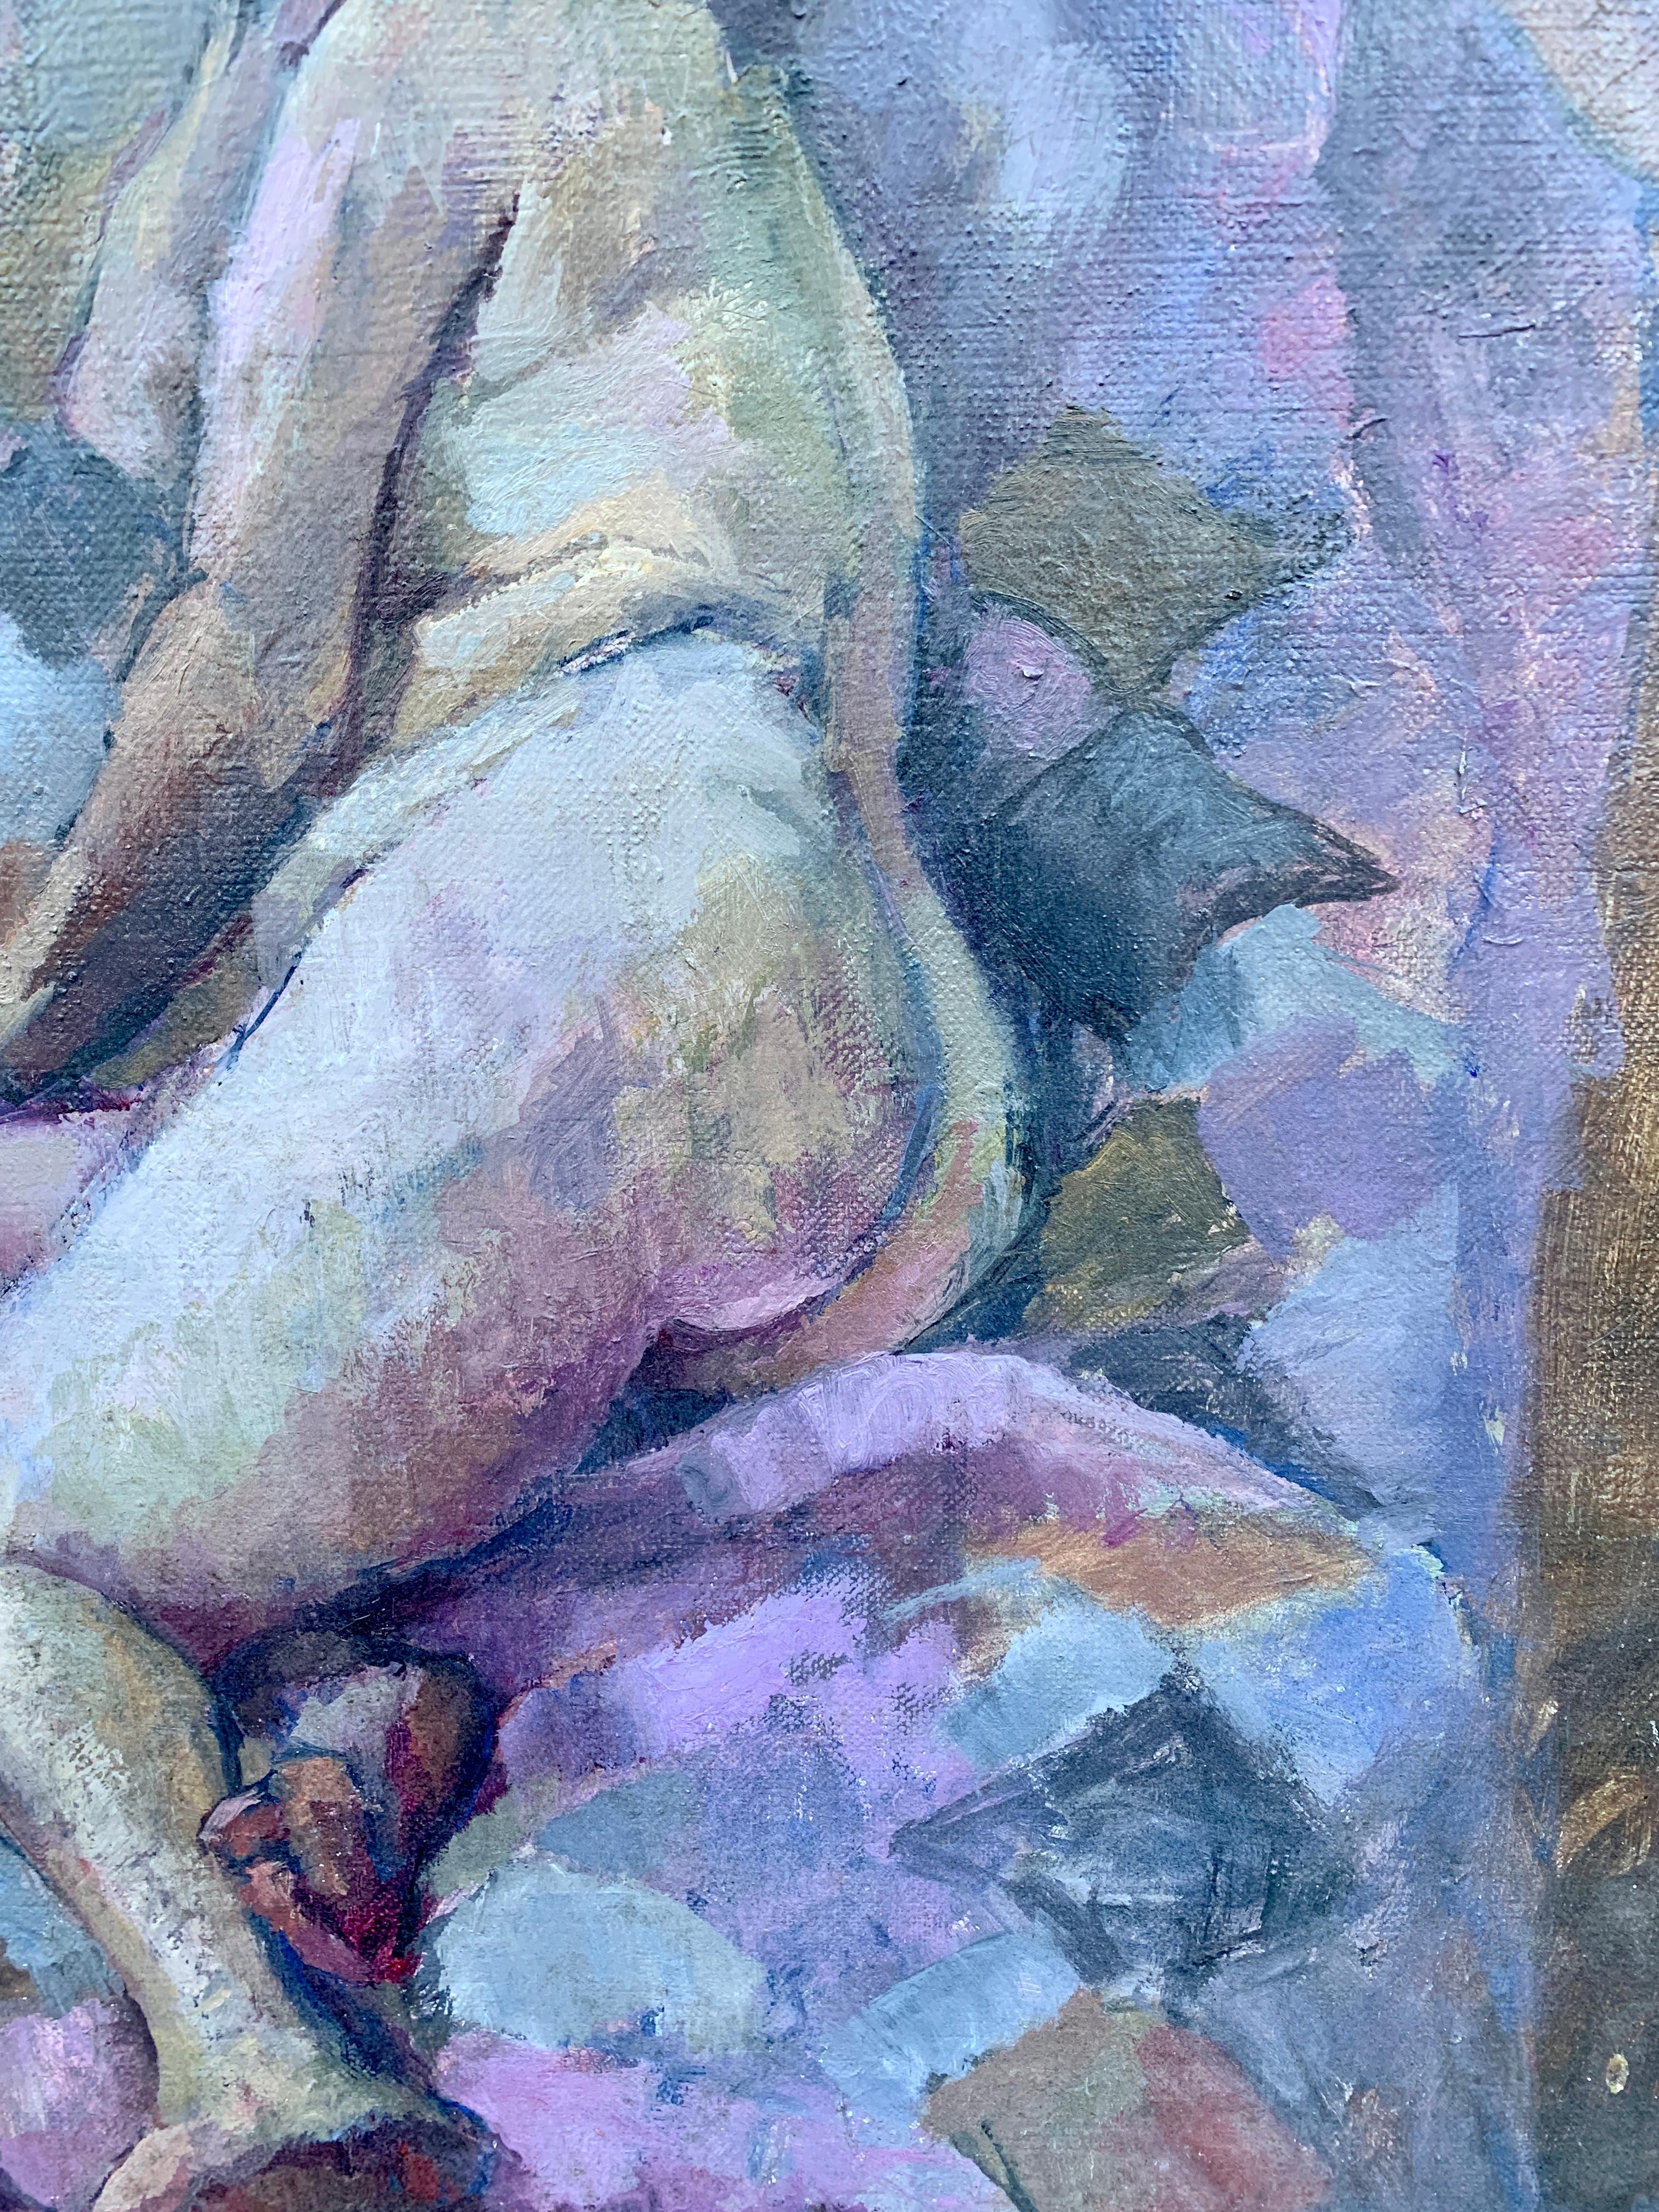 Portrait à l'huile moderne du milieu du siècle dernier d'une femme nue allongée sur un lit, années 1950 - Painting de Laure Jessop